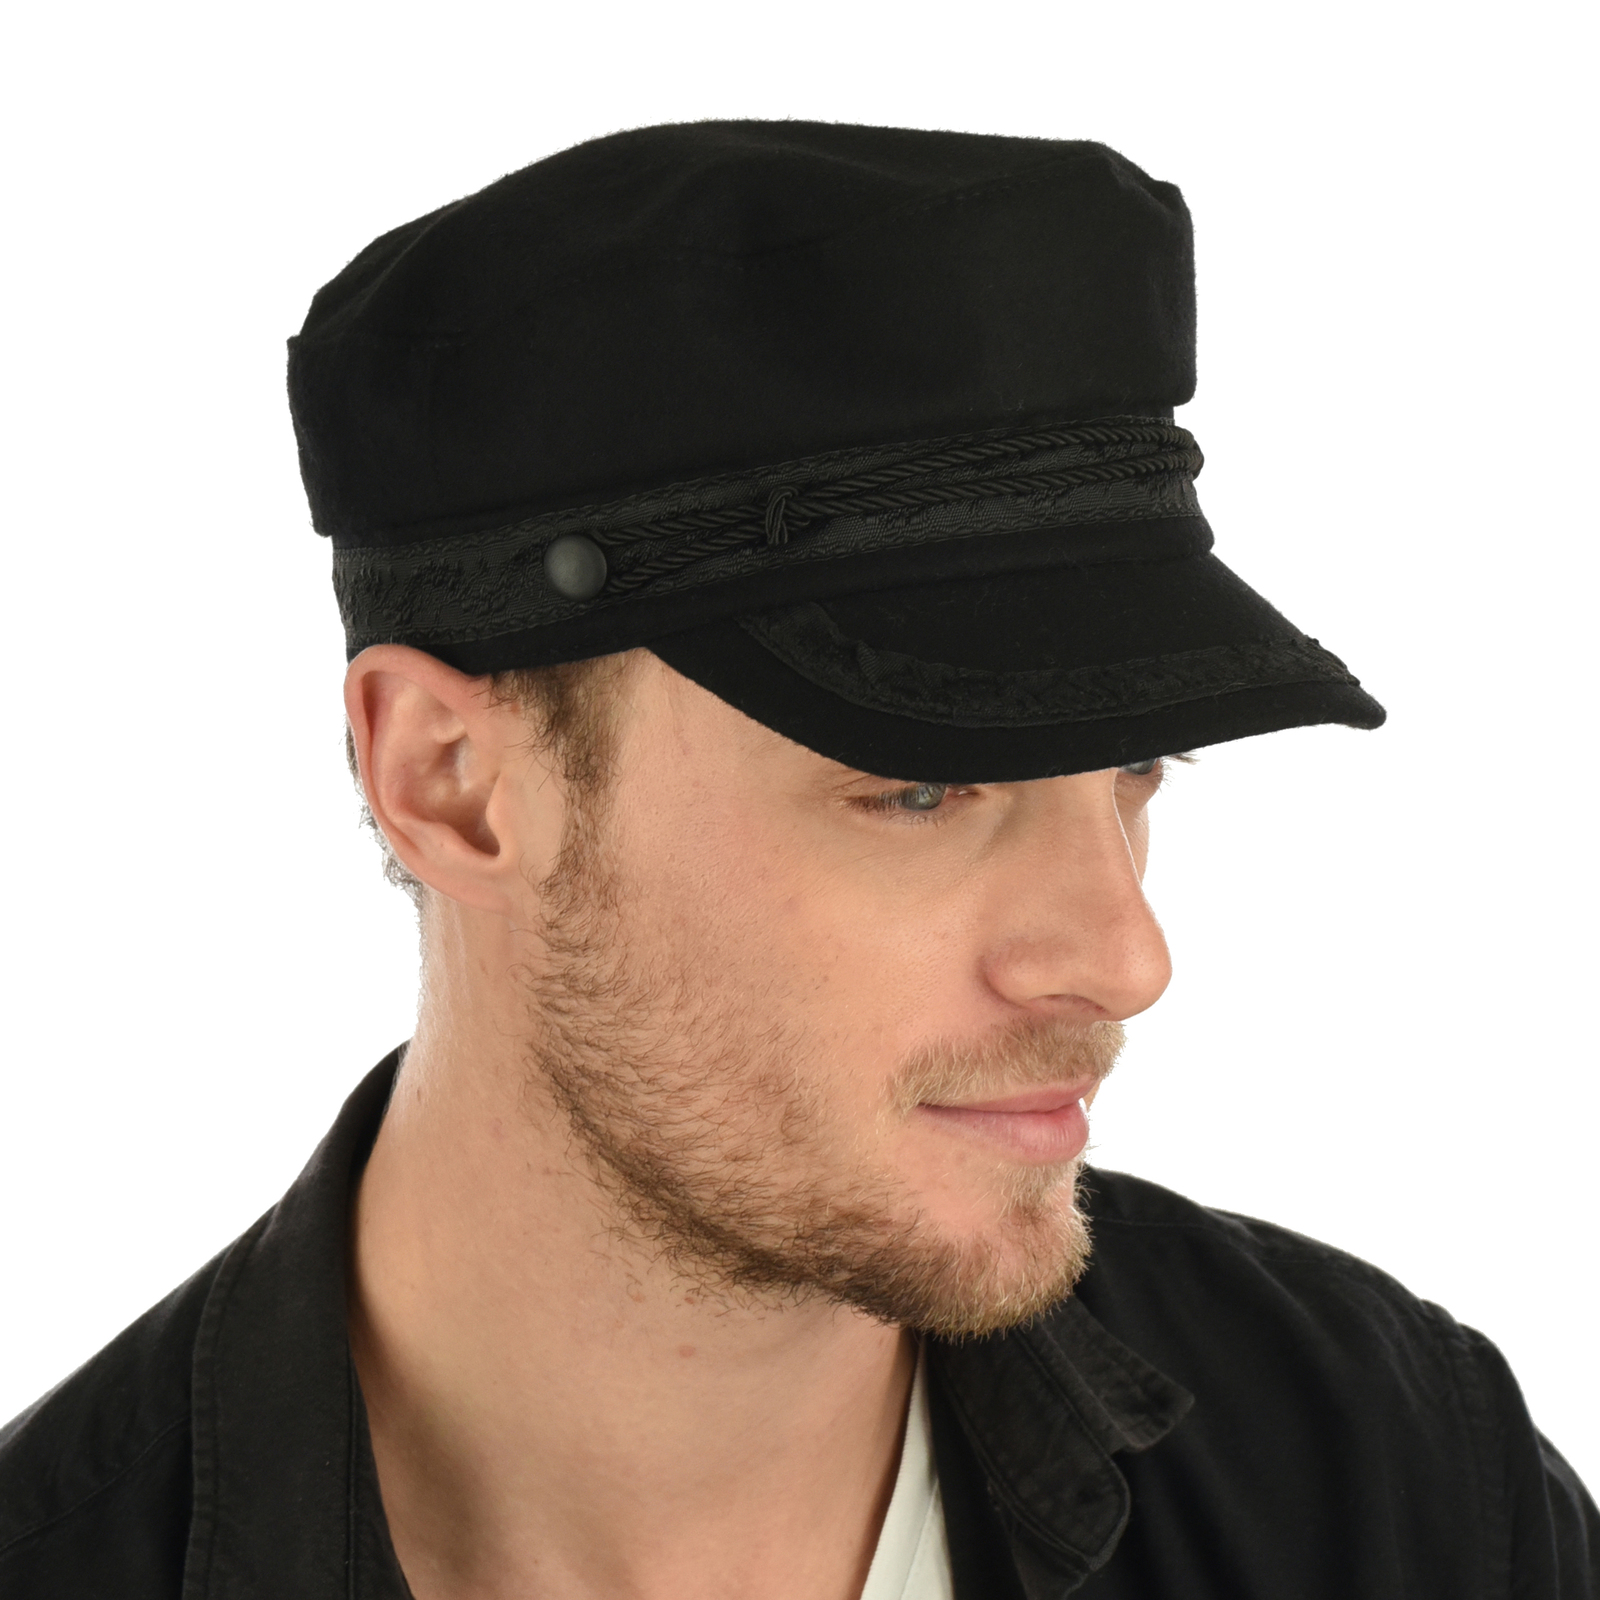 Wool Felt Greek Fisherman Baker Boy Cap Hat Black John Lennon Style